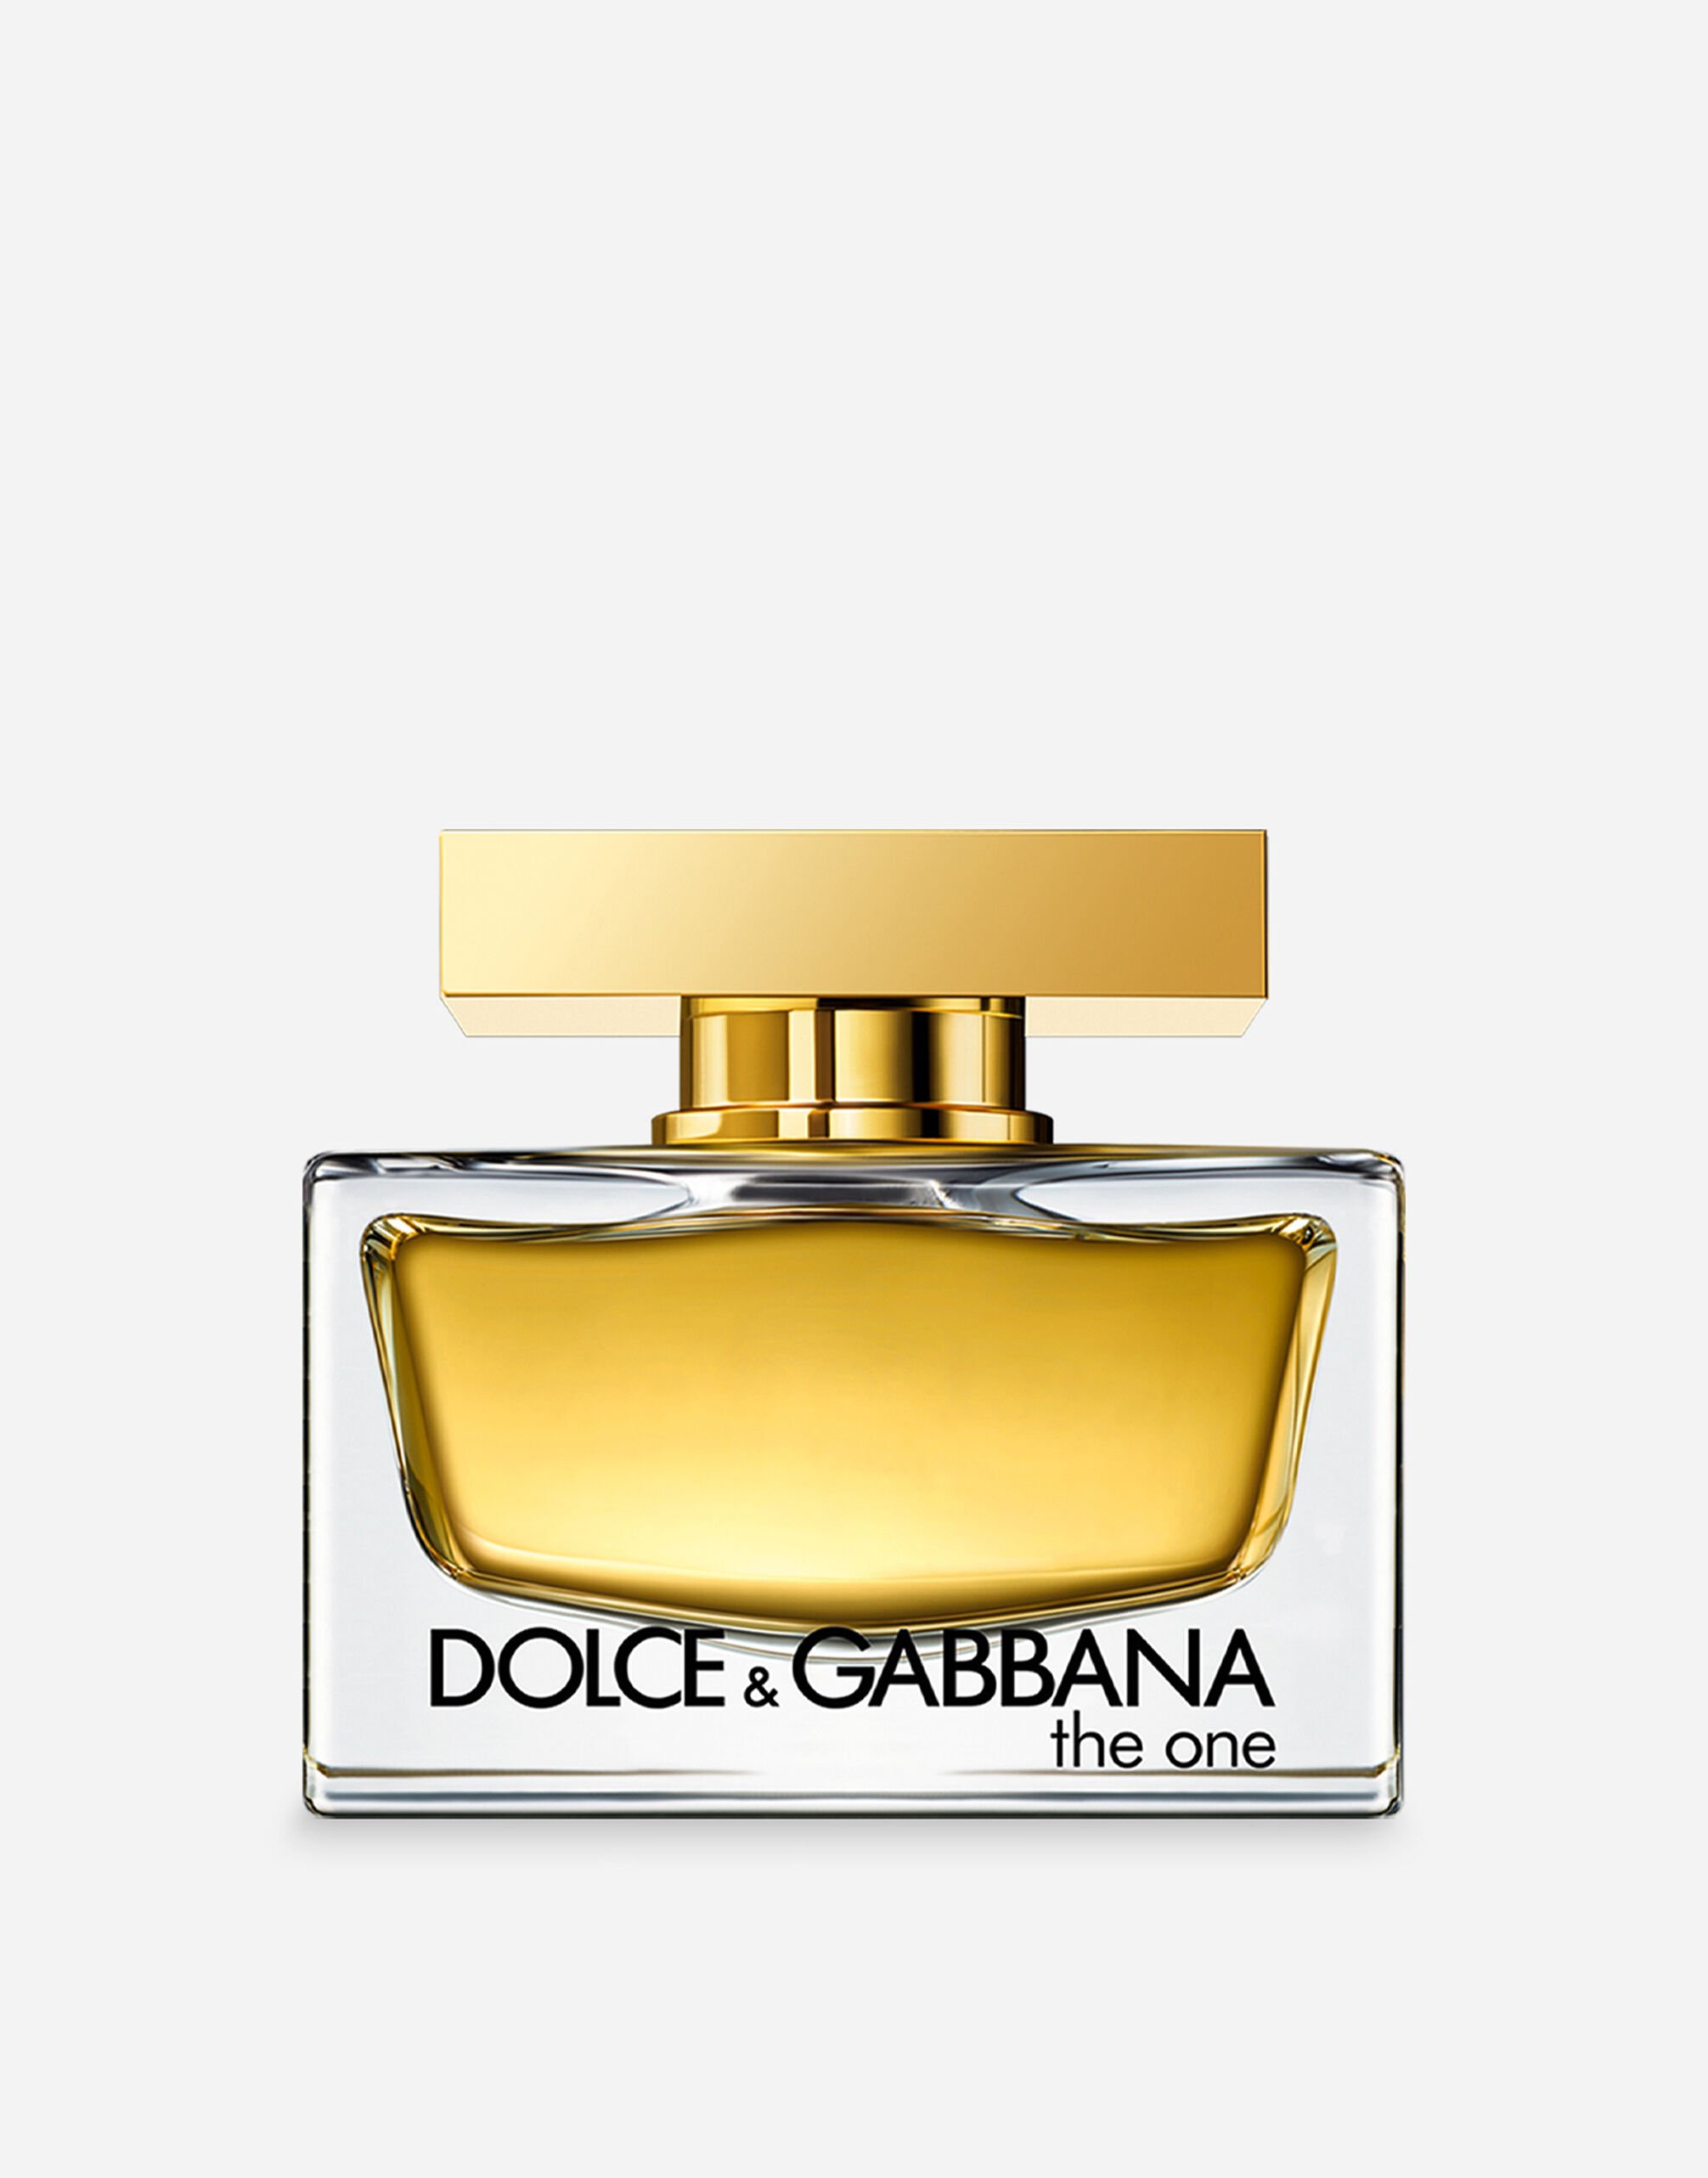 Dolce & Gabbana The One Eau de Parfum - VT00LWVT000